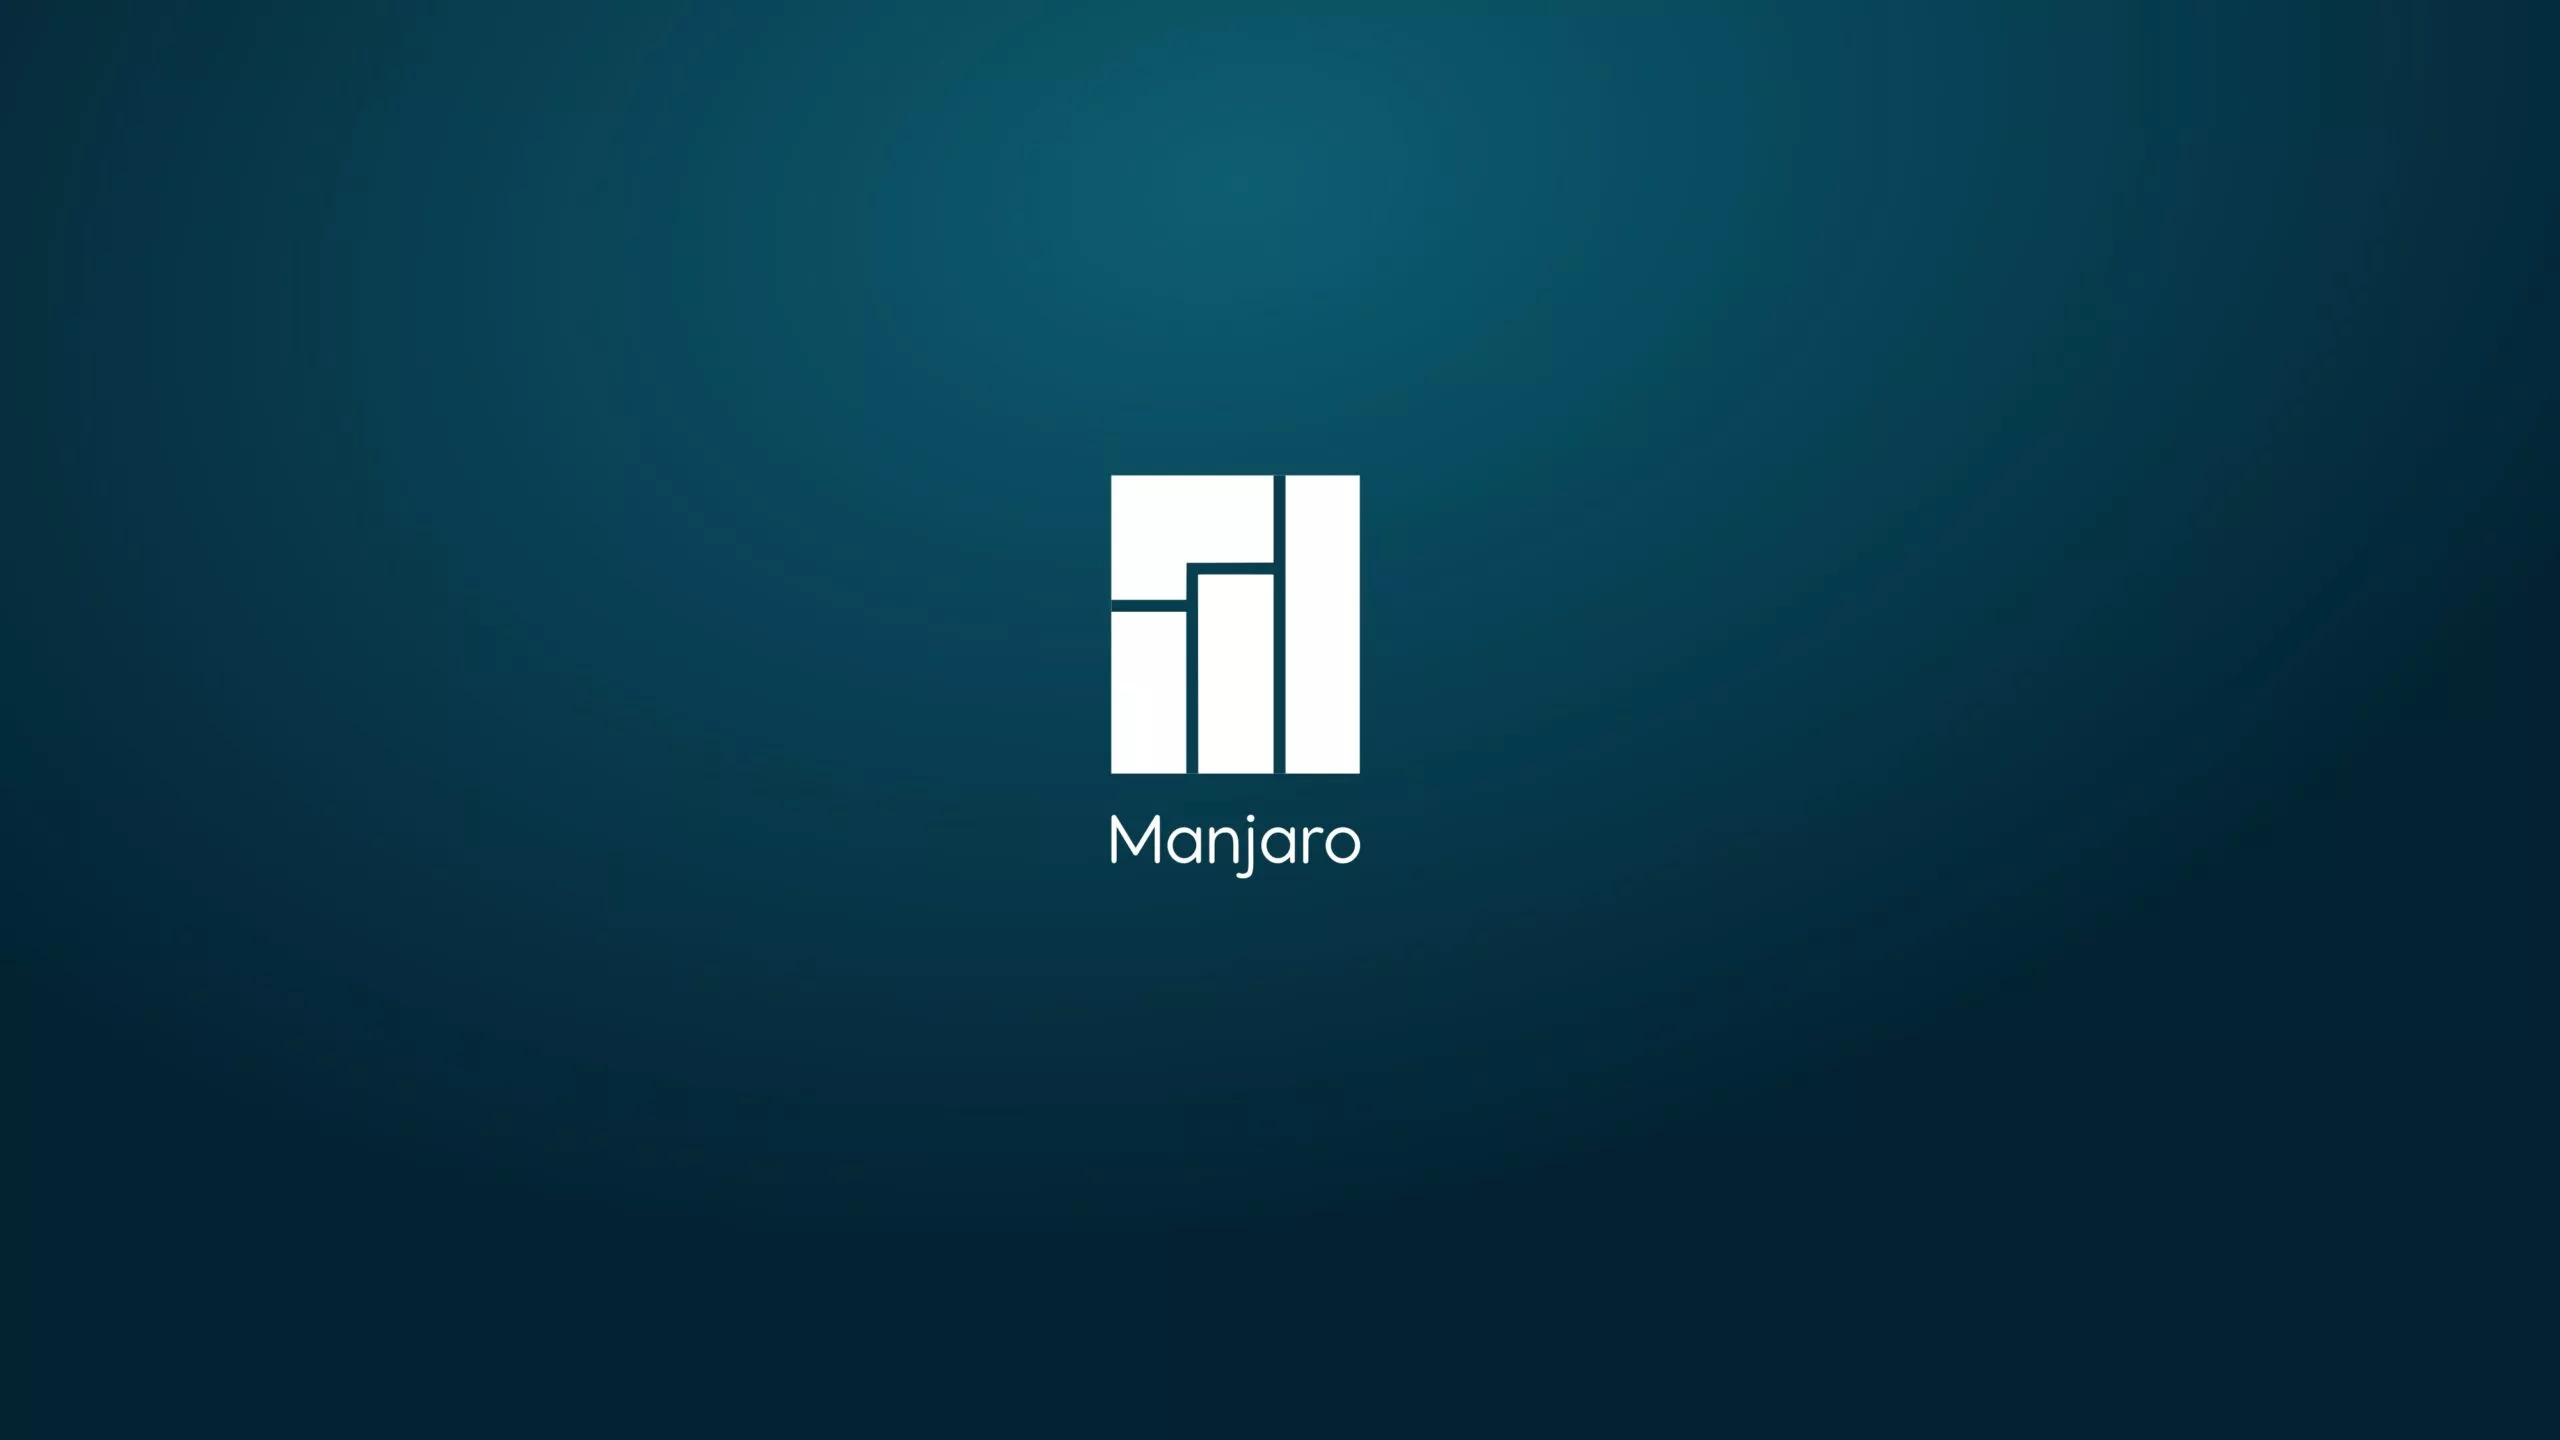 De nieuwste versie van Manjaro Linux 24.0 “Wynsdey” is beschikbaar om te downloaden